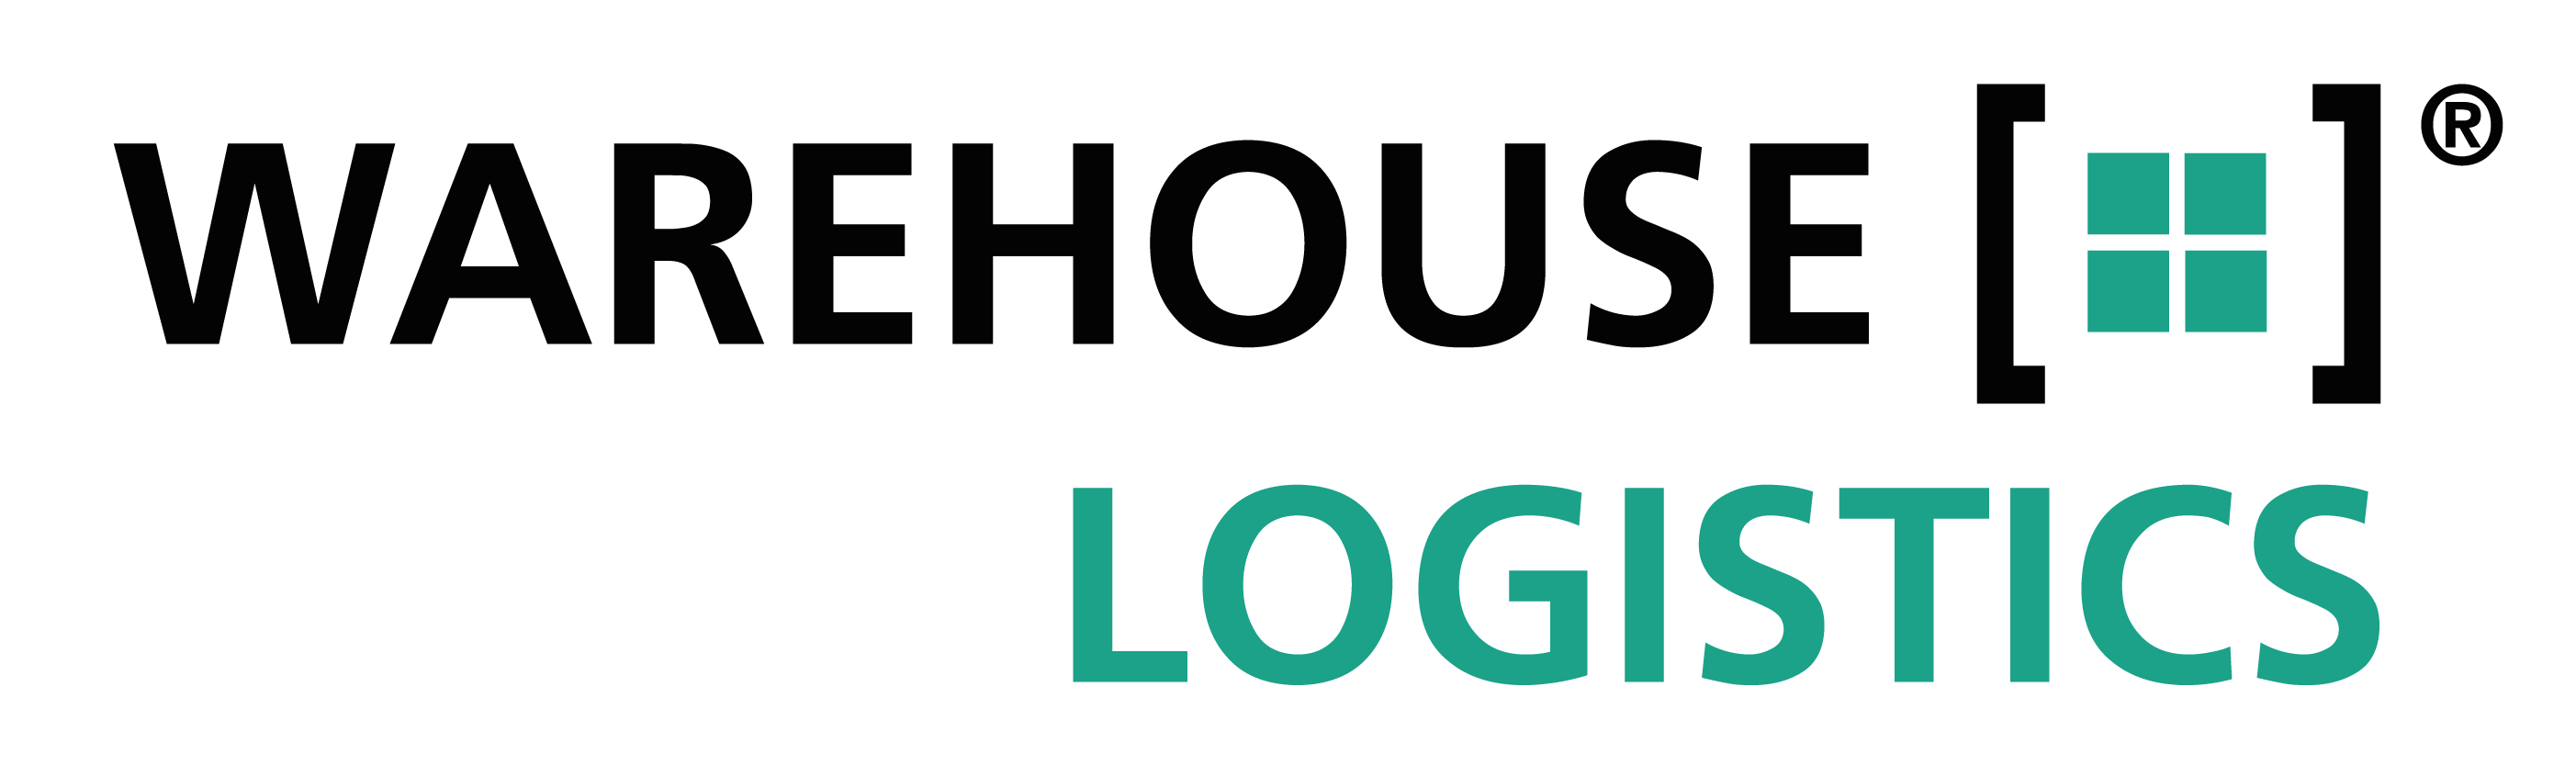 warehouse-logistics: Teilnehmer und Systeme